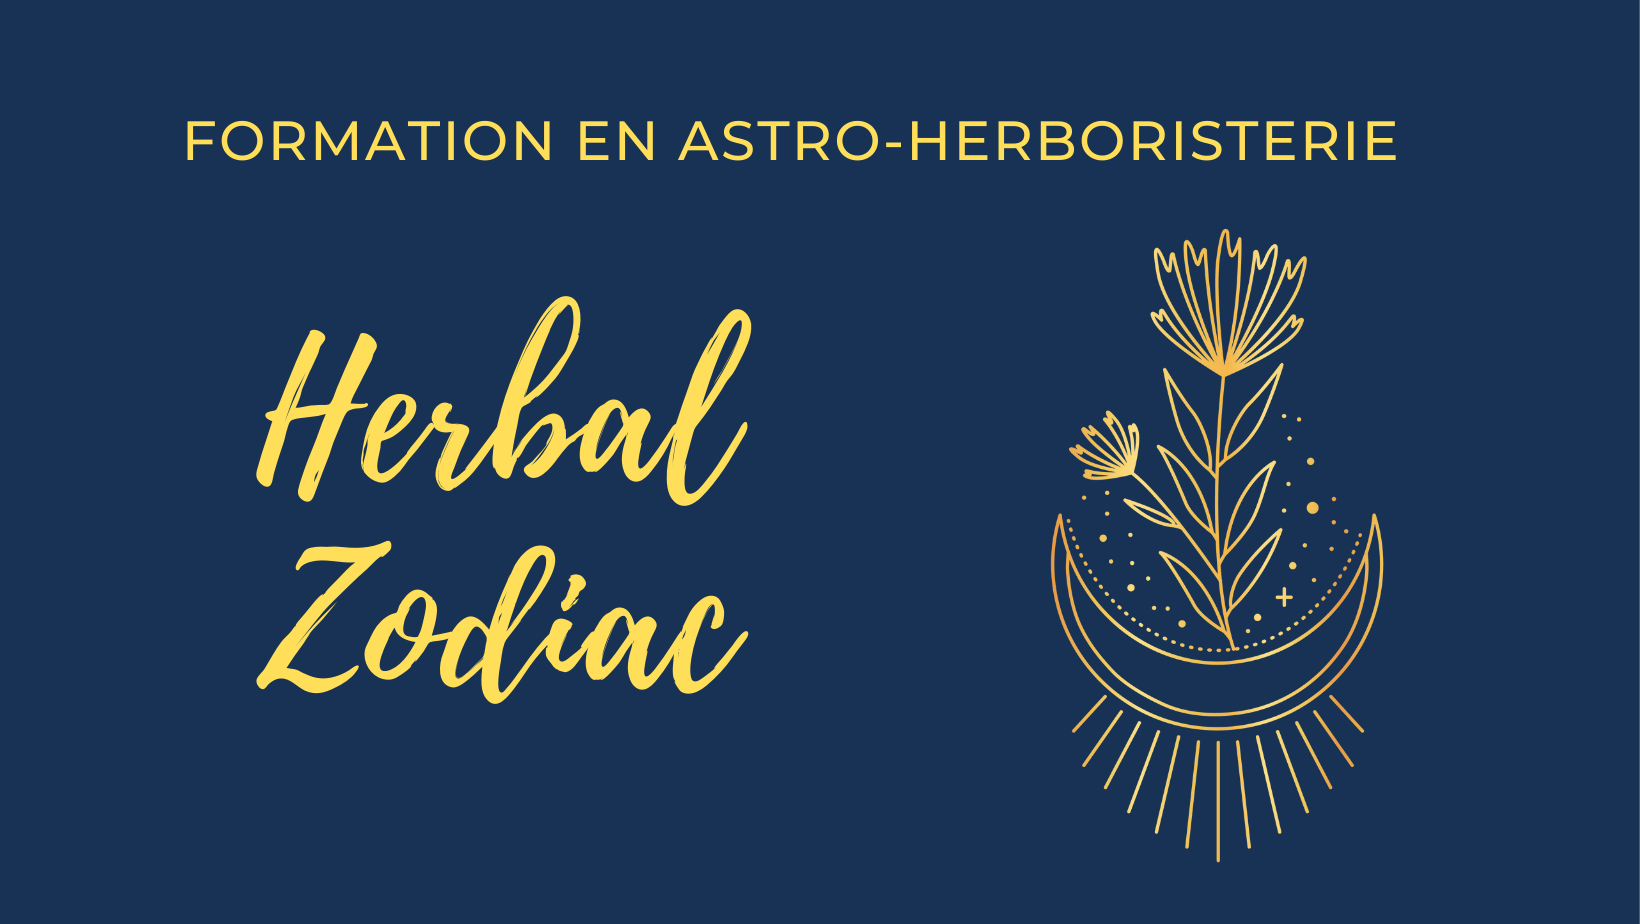 Formation Herbal Zodiac Le zodiaque végétal  